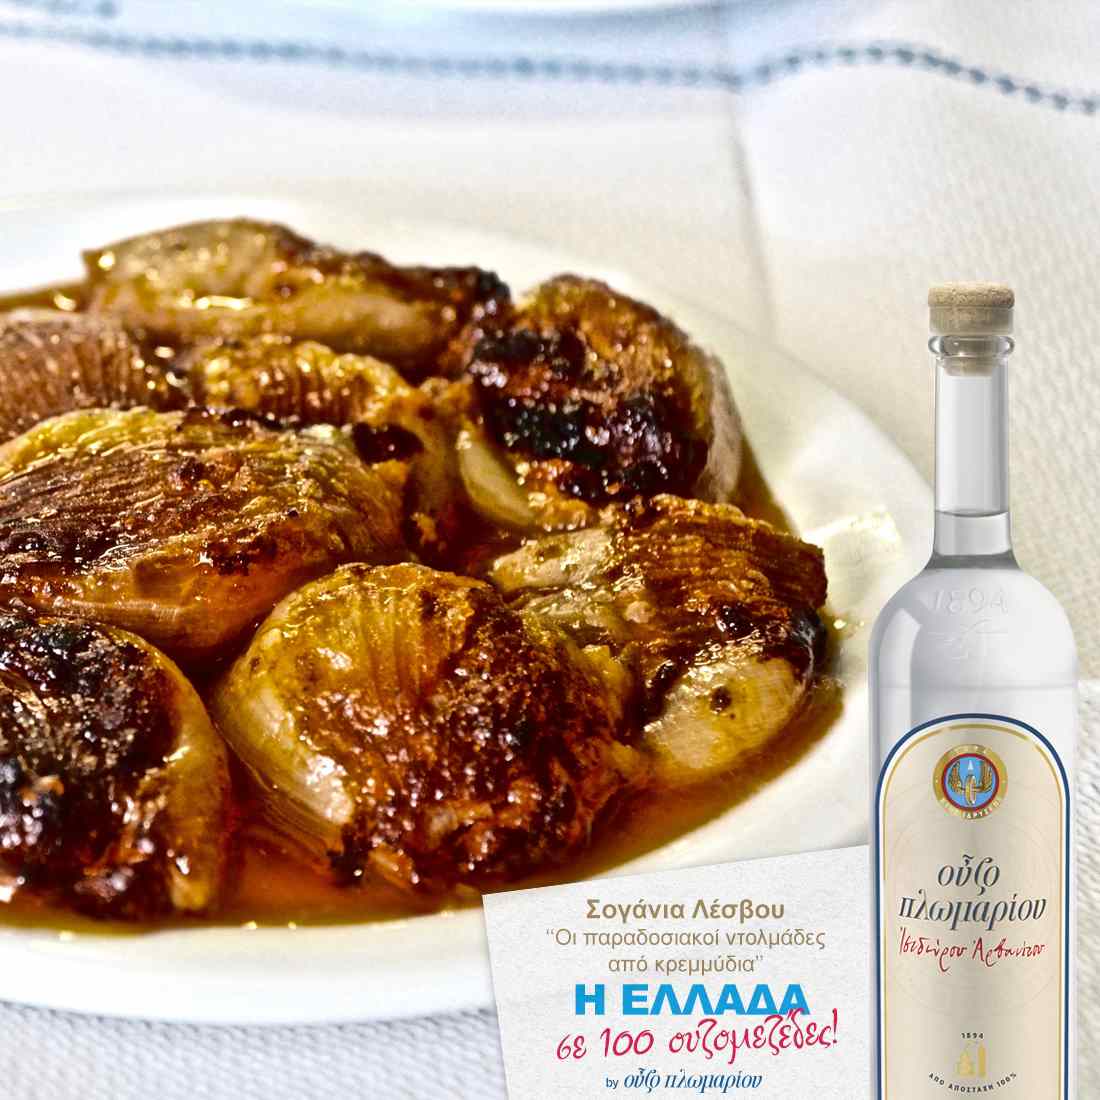 Σογάνια Λέσβου - Ουζομεζέδες - Greek Gastronomy Guide